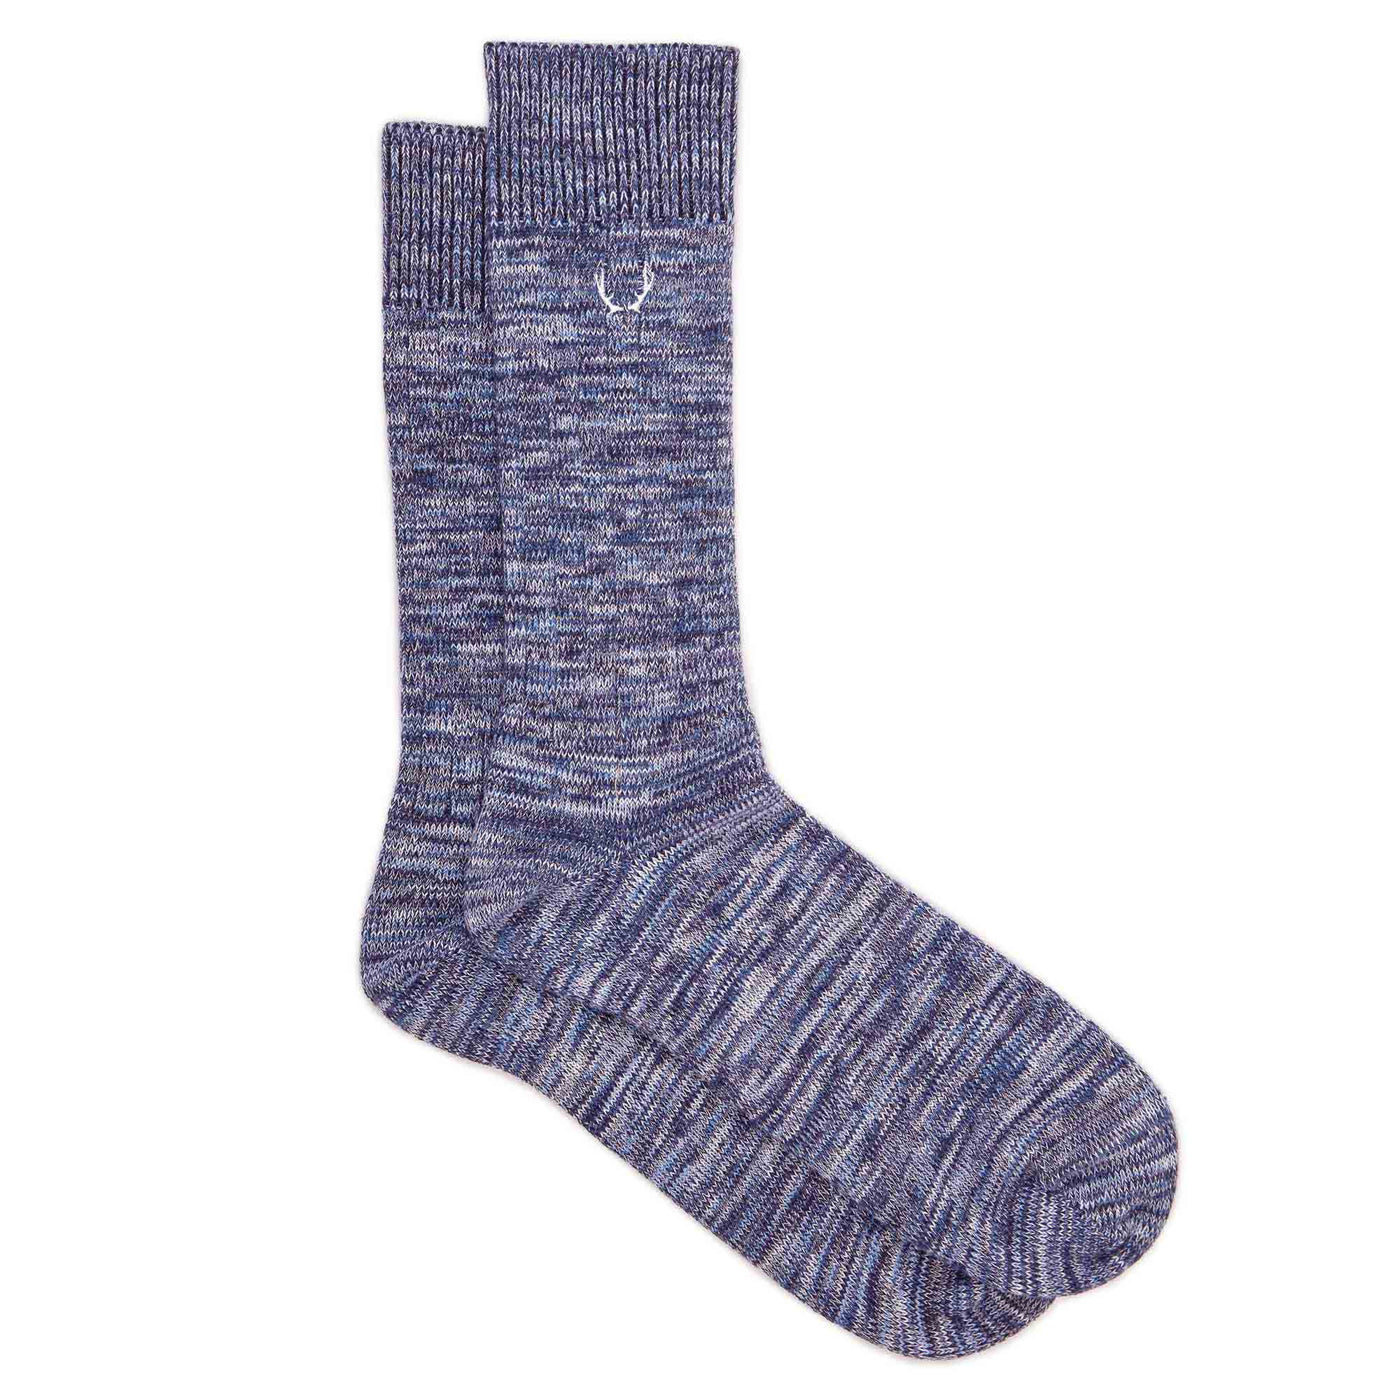 Chaussettes homme bleu et gris chiné en coton bio